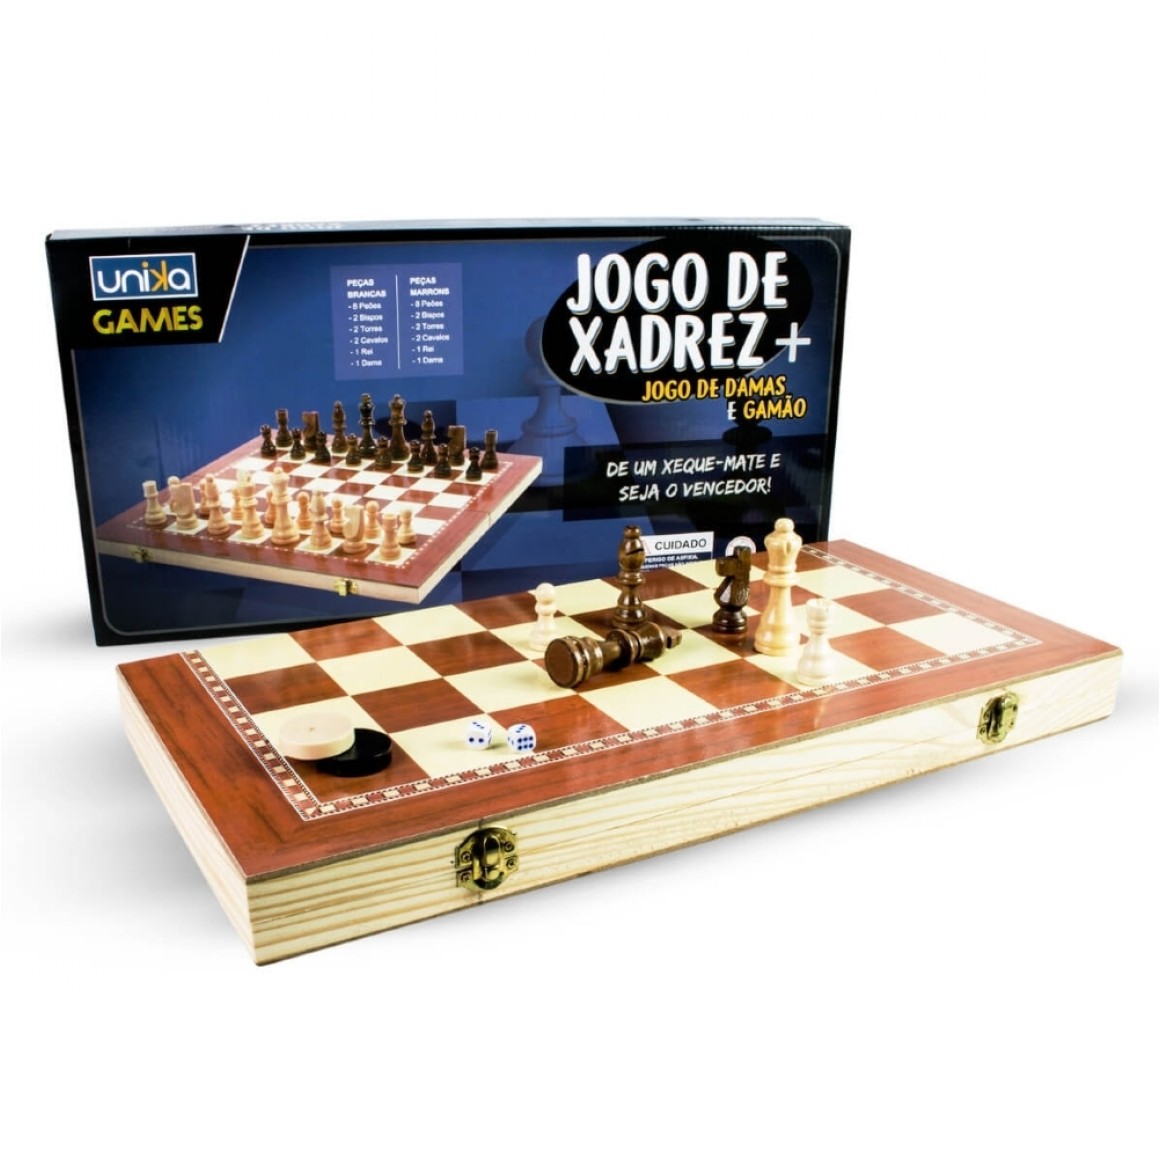 CB Games - Jogo de Xadrez + Damas + Gamão de Madeira